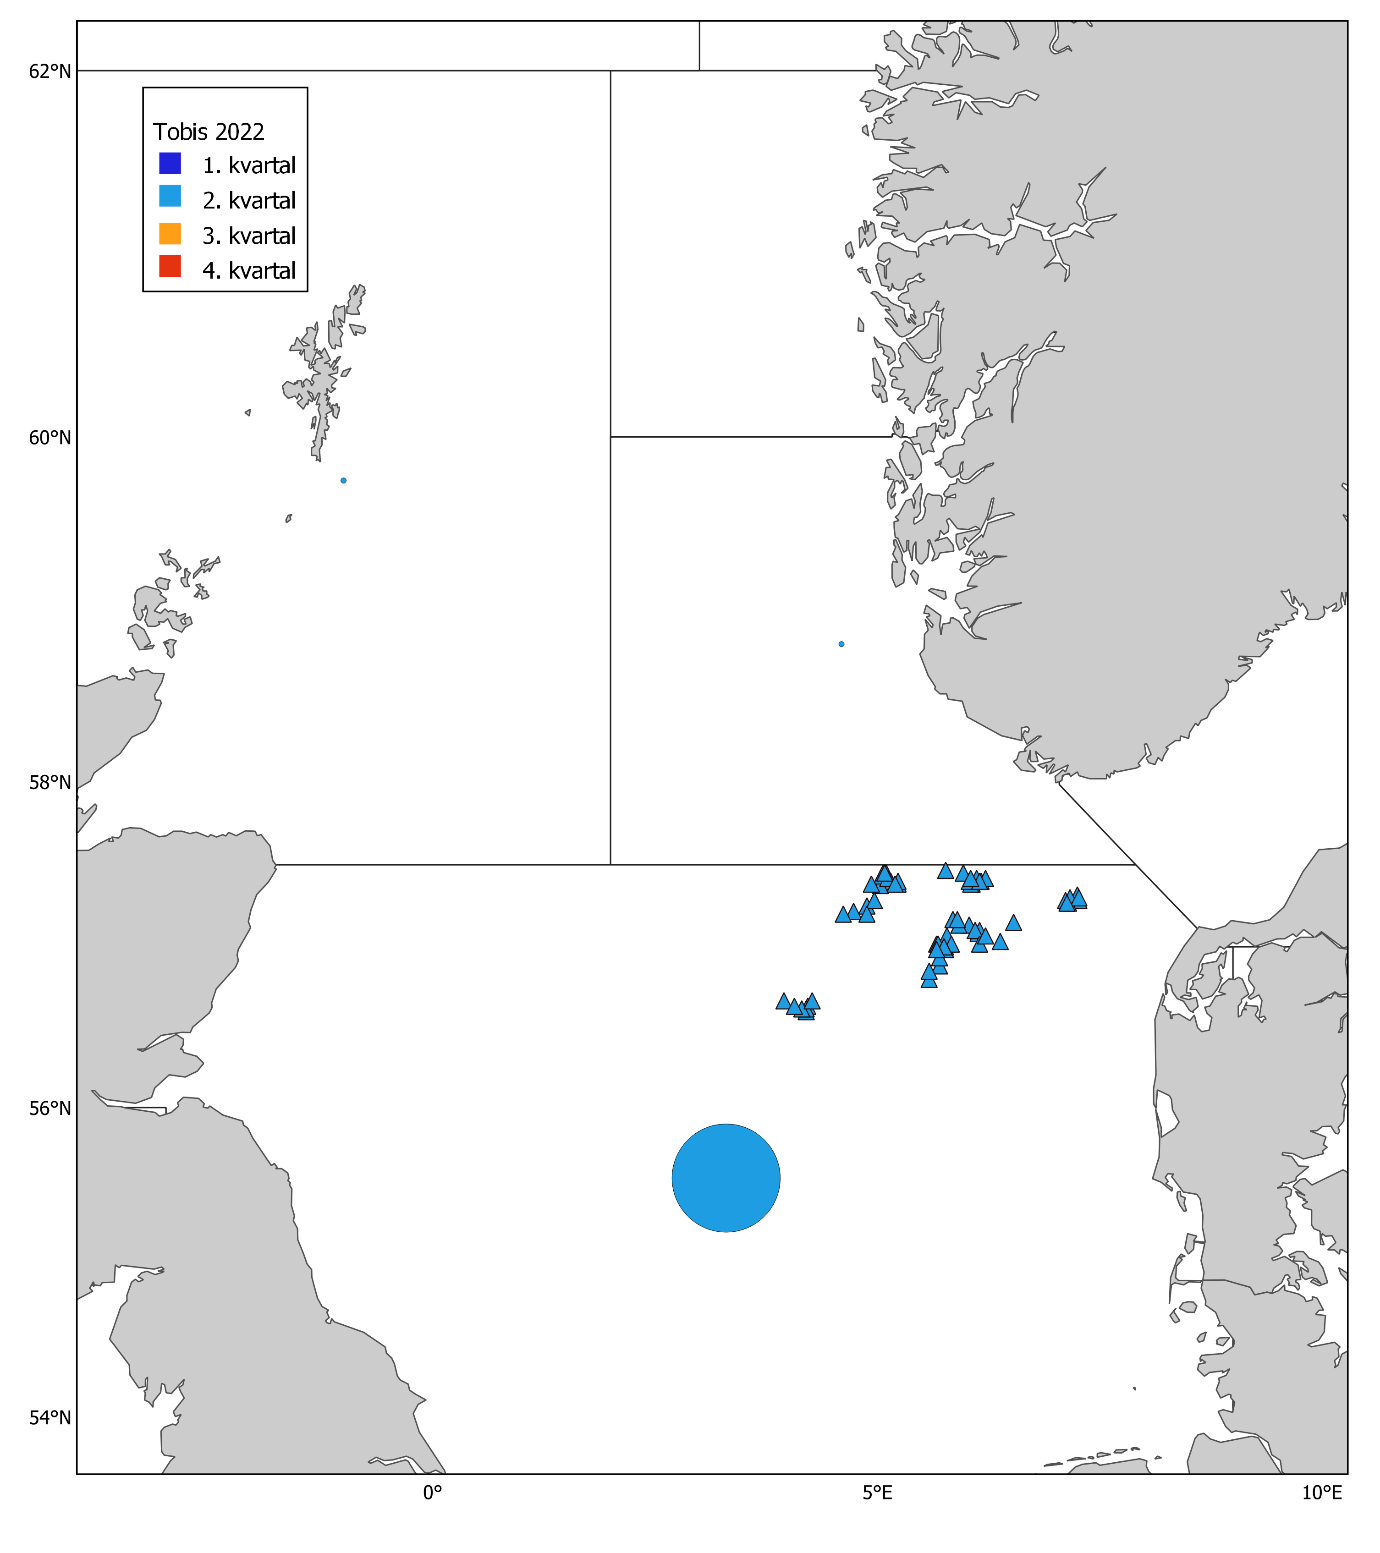 Figur 12. Tobis 2022. Norske kommersielle fangster (runde kakediagram, størrelsen proporsjonal med fangstmengde) per statistisk hovedområde og kvartal, og prøver fra fangstprøvelotteriet (trekanter). Mørkeblå: 1. kvartal, lyseblå: 2. kvartal, oransje: 3. kvartal, og rød: 4. kvartal. Fangsten i 2022 var 81 676 tonn og antall prøver fra fangstprøvelotteriet var 75. 